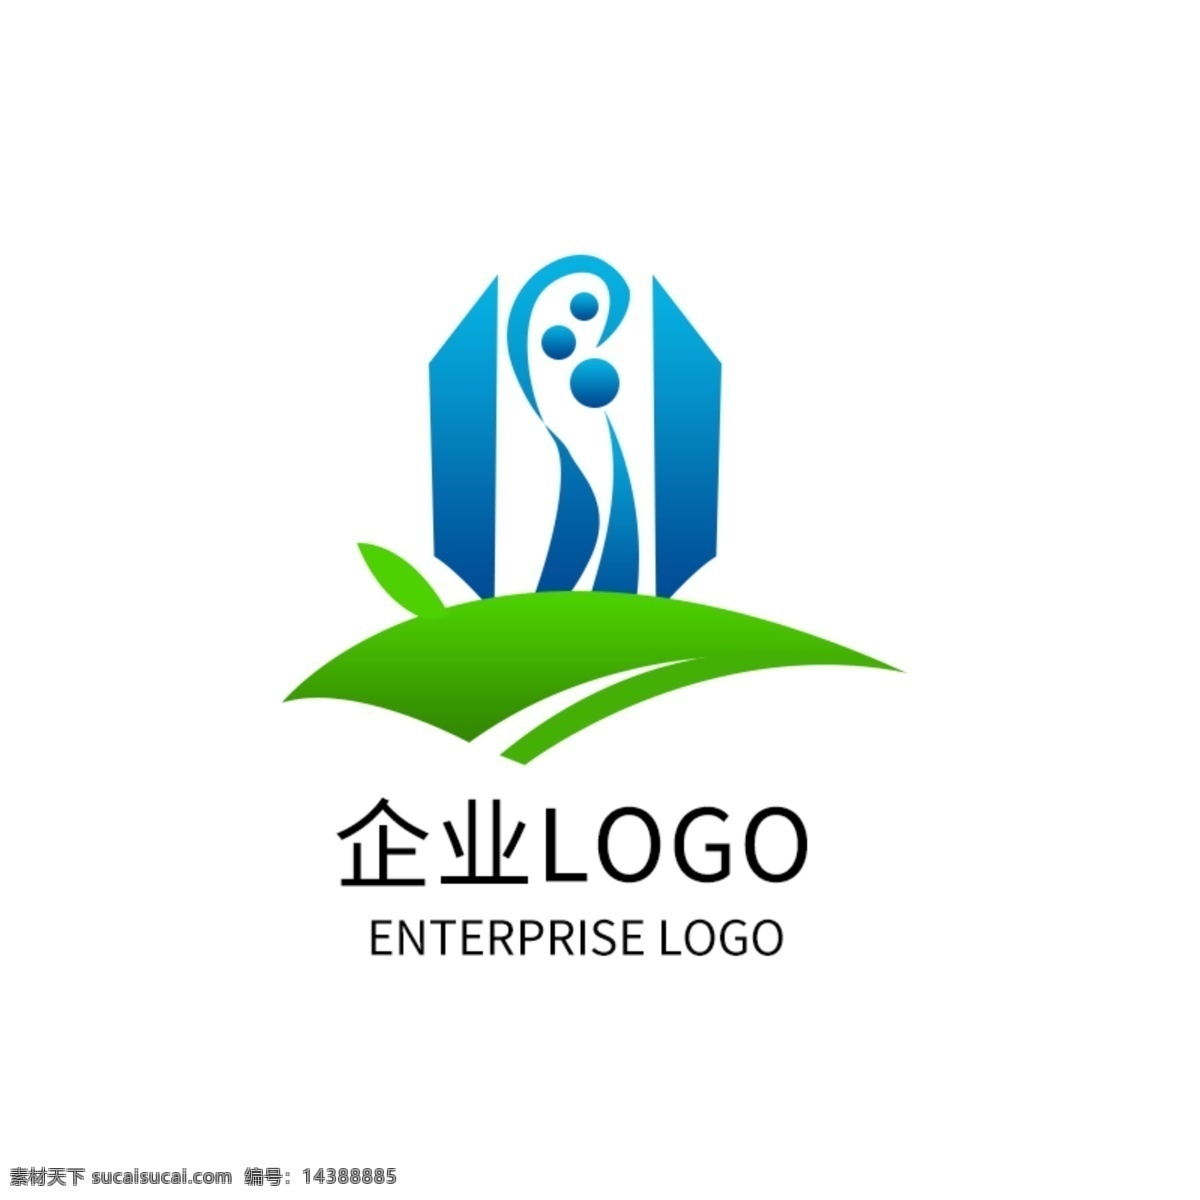 科技 公司 logo 企业 标志 绿色 蓝色大楼 企业标志设计 地产公司 房产公司 导游图 logo设计